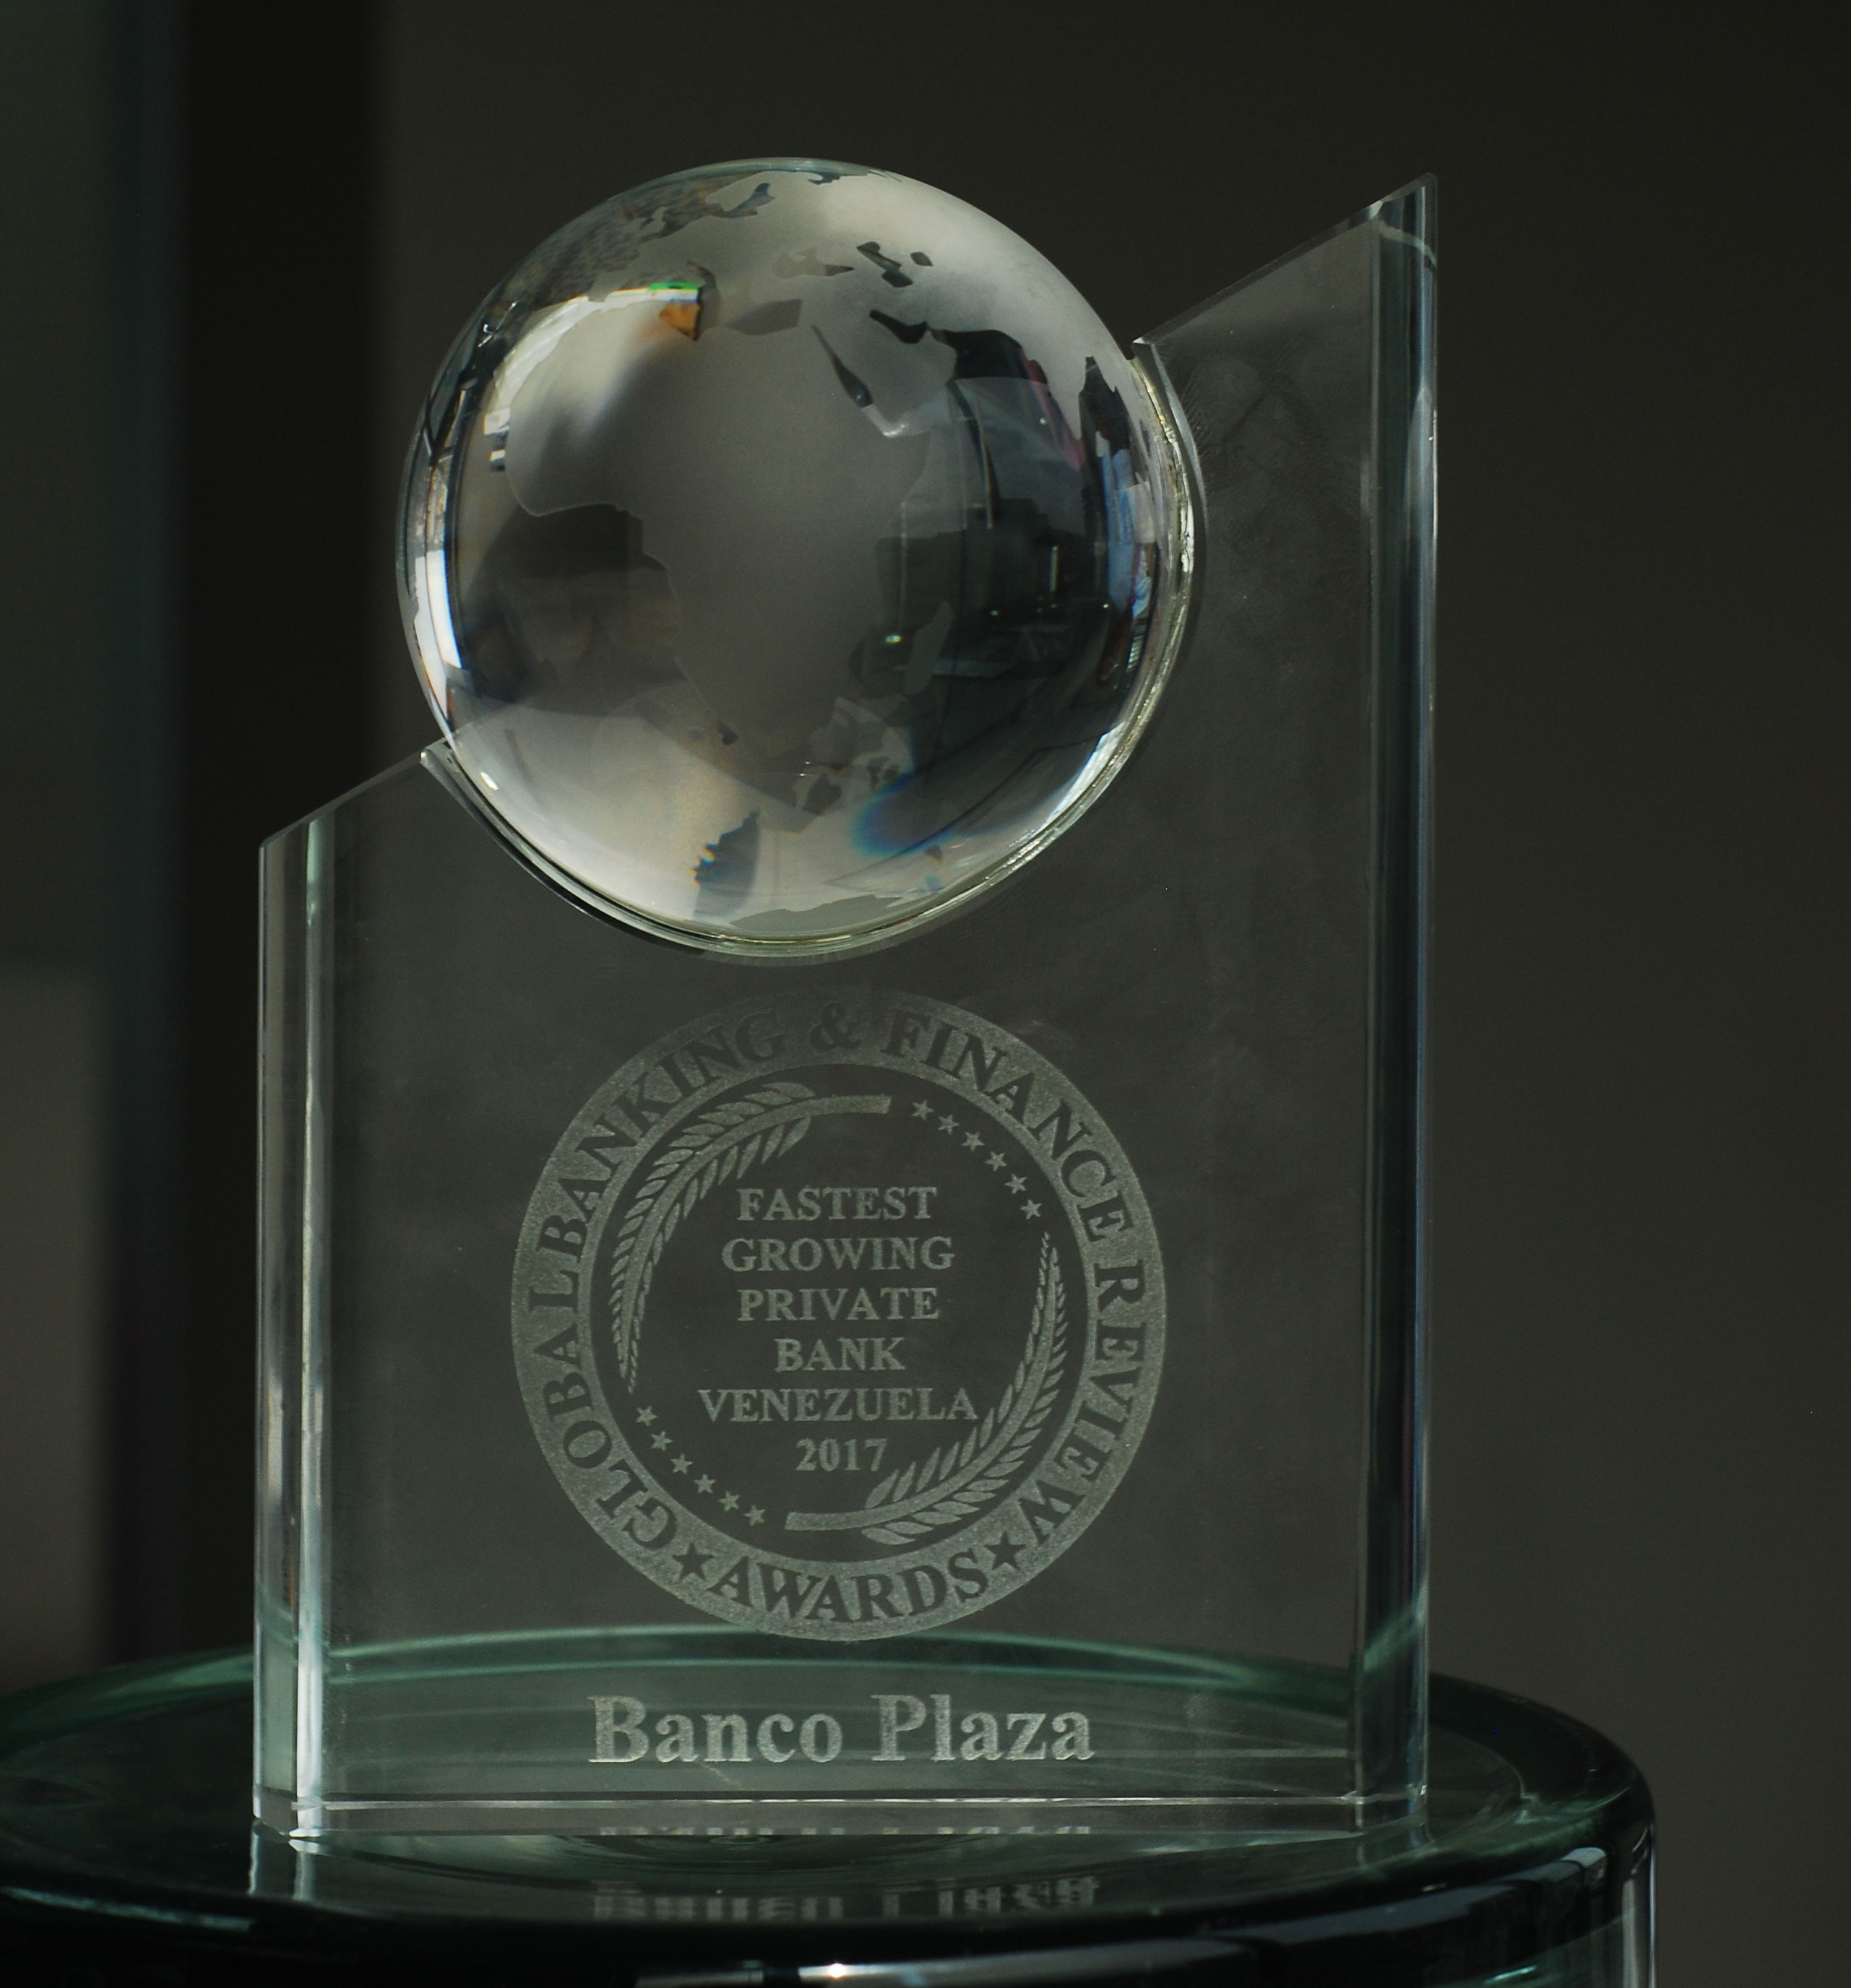 Banco Plaza premiado por su rápido crecimiento en 2017